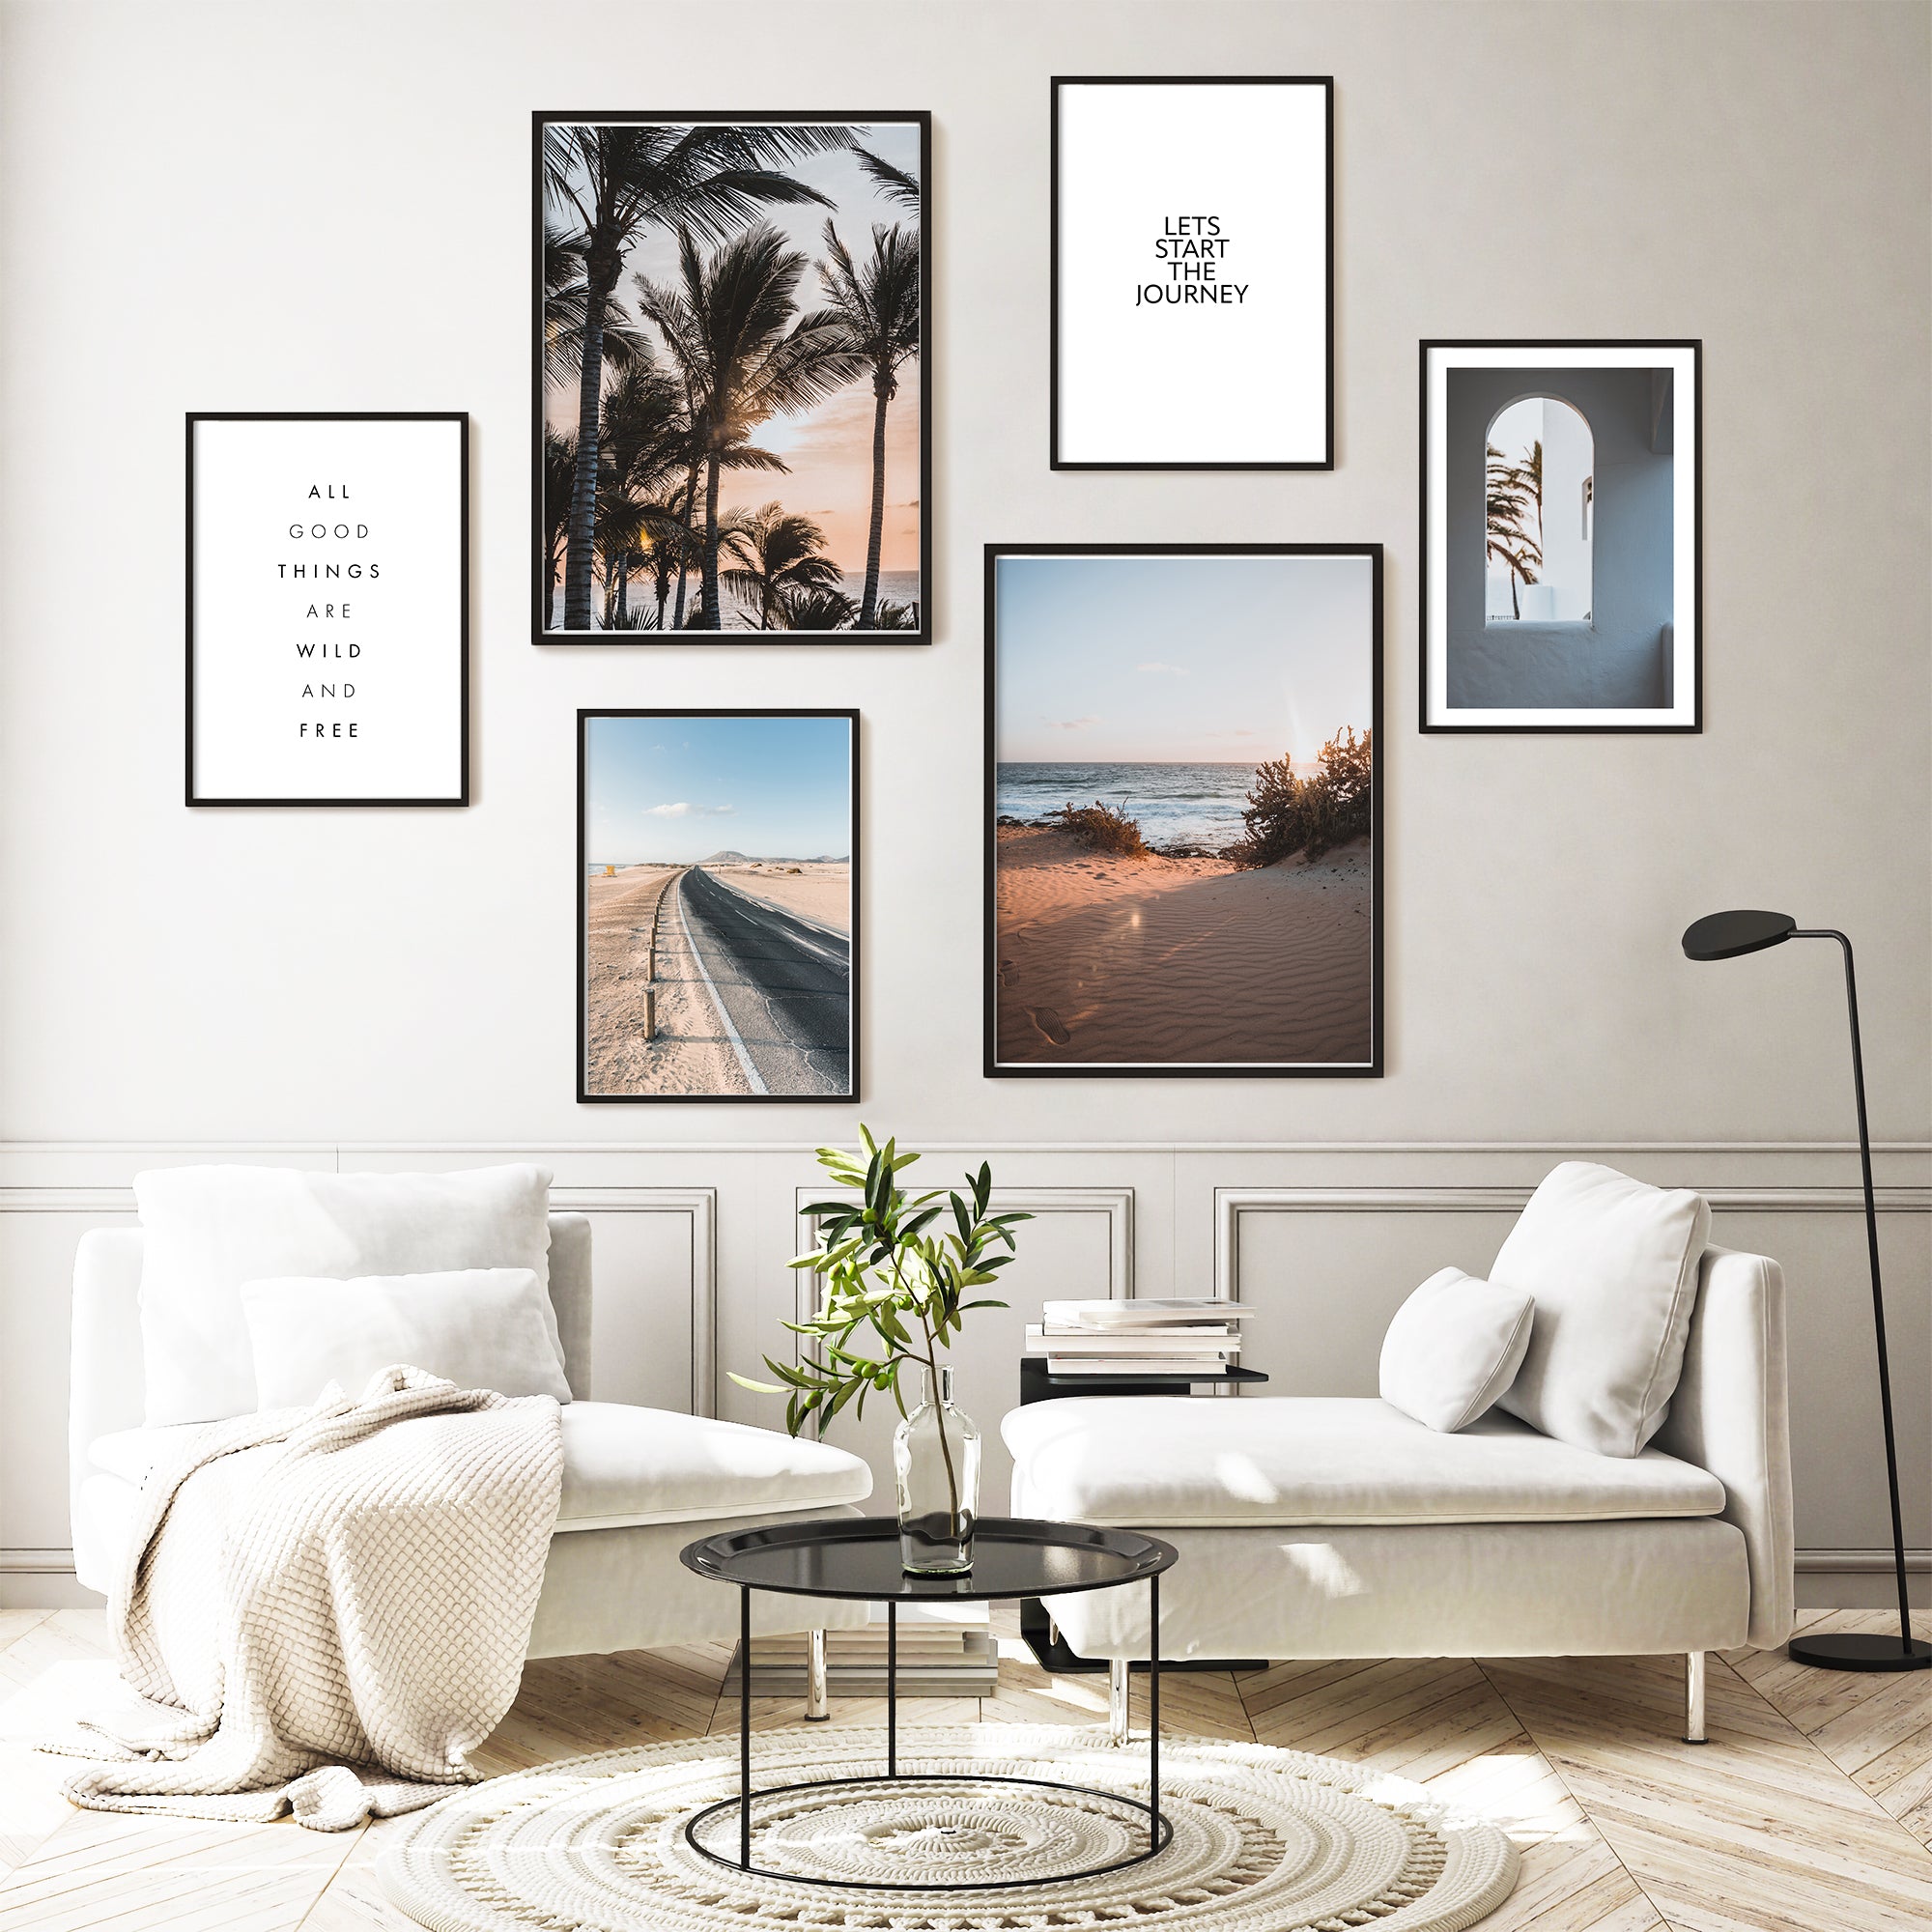 4one-pictures-poster-set-bilderrahmen-6er-bilder-urlaub-strand-palmen-meer-journey-wohnzimmer.jpg